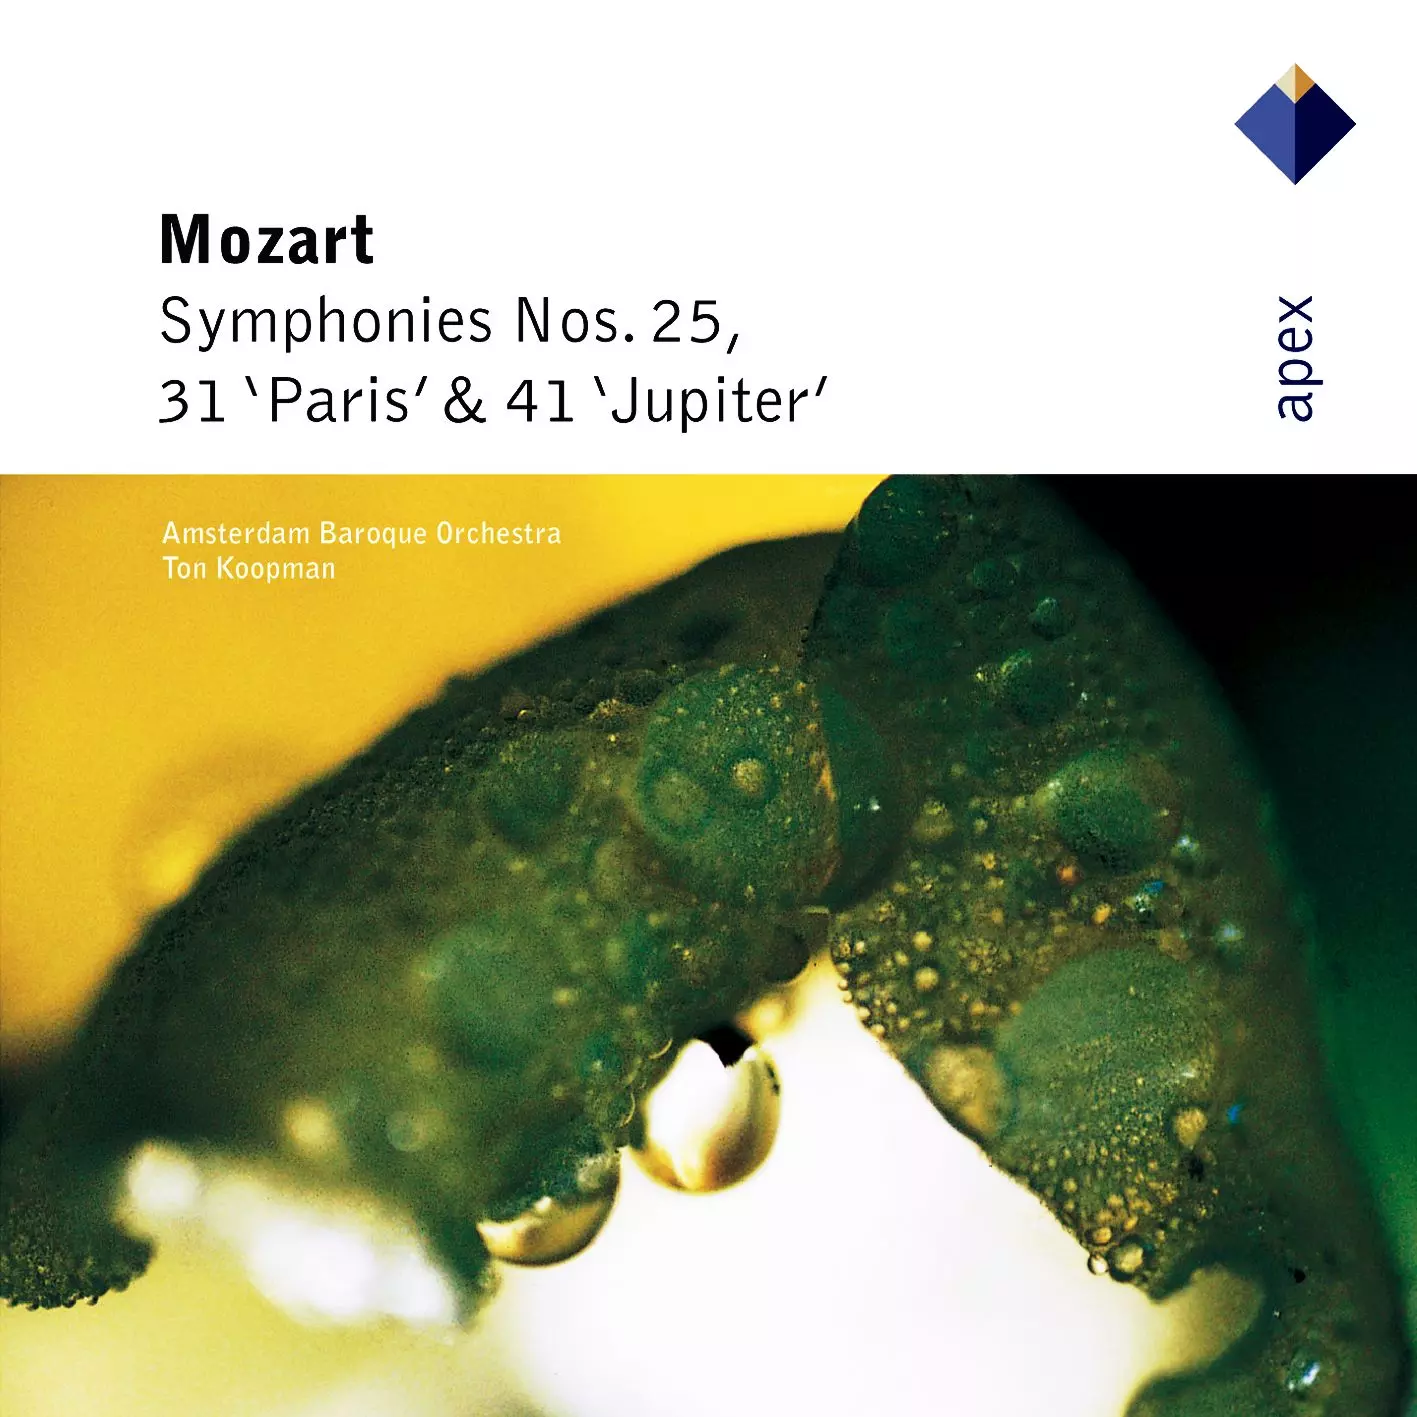 Mozart: Symphonies Nos 25, 31, 'Paris' & 41, 'Jupiter'